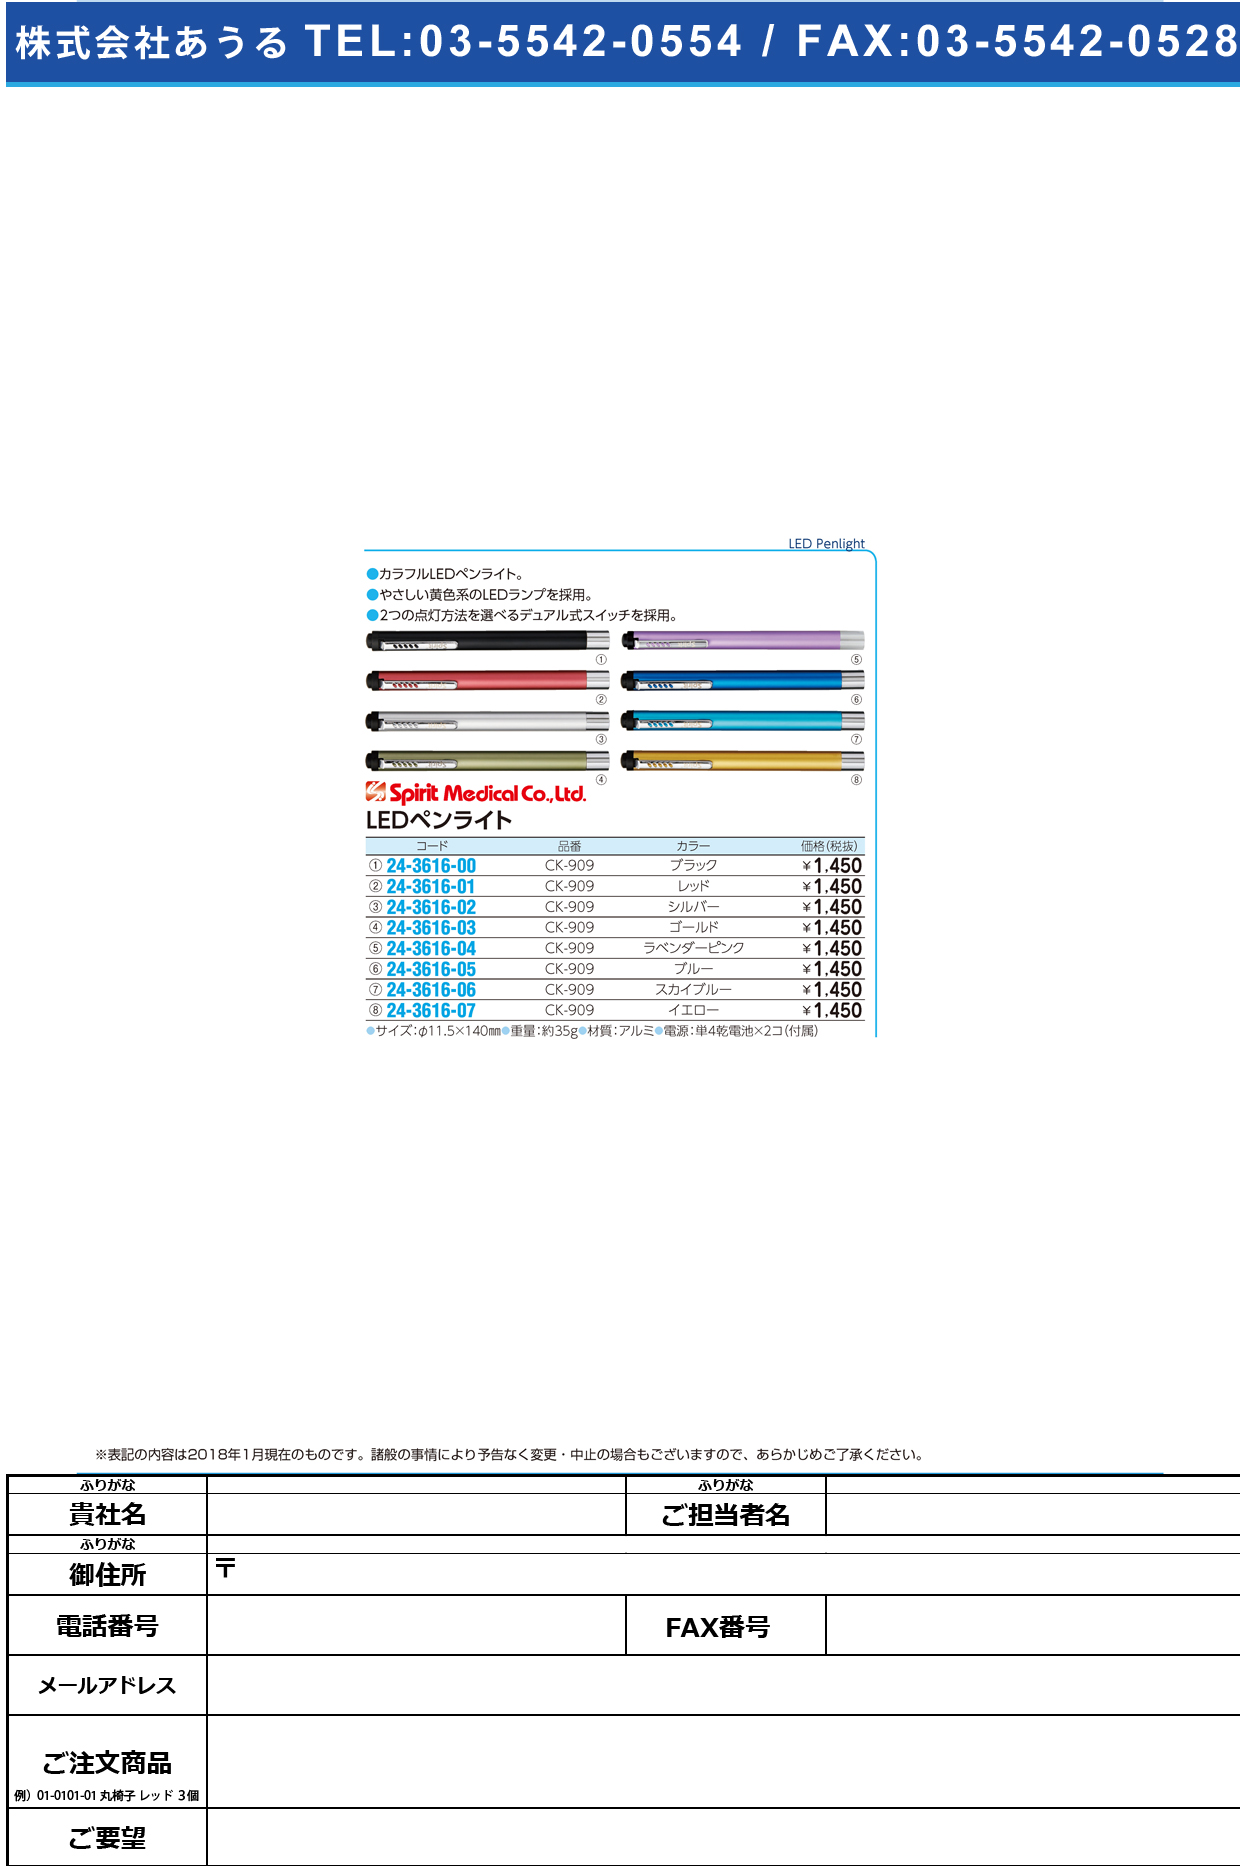 (24-3616-06)ＳｐｉｒｉｔＬＥＤペンライト CK-909(ｽｶｲﾌﾞﾙｰ) SPIRITLEDﾍﾟﾝﾗｲﾄ(スピリット・メディカル社)【1台単位】【2019年カタログ商品】